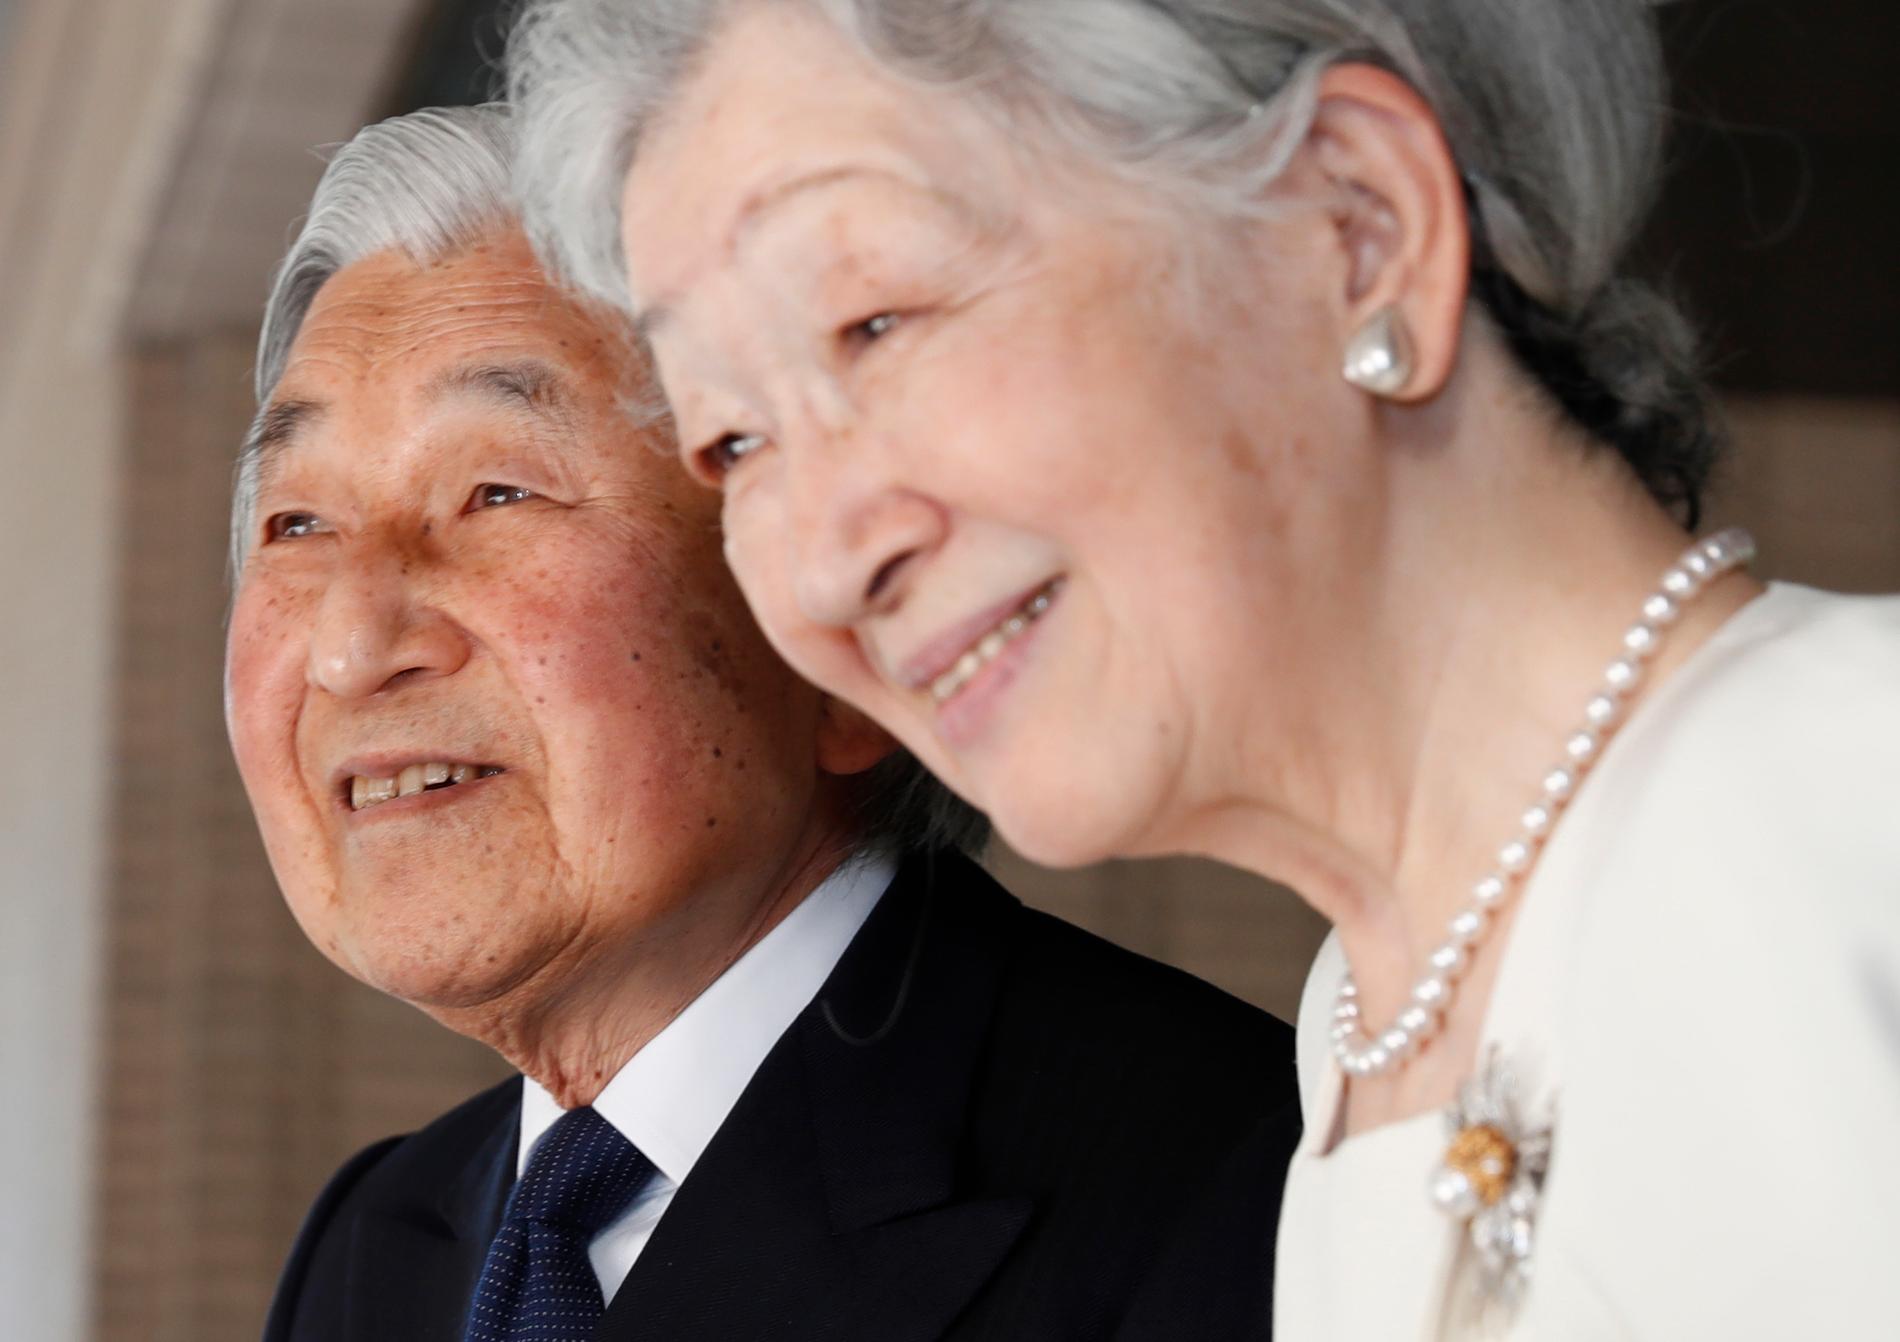 Kejsare Akihito och kejsarinna Michiko har varit gifta i 60 år. Arkivbild.